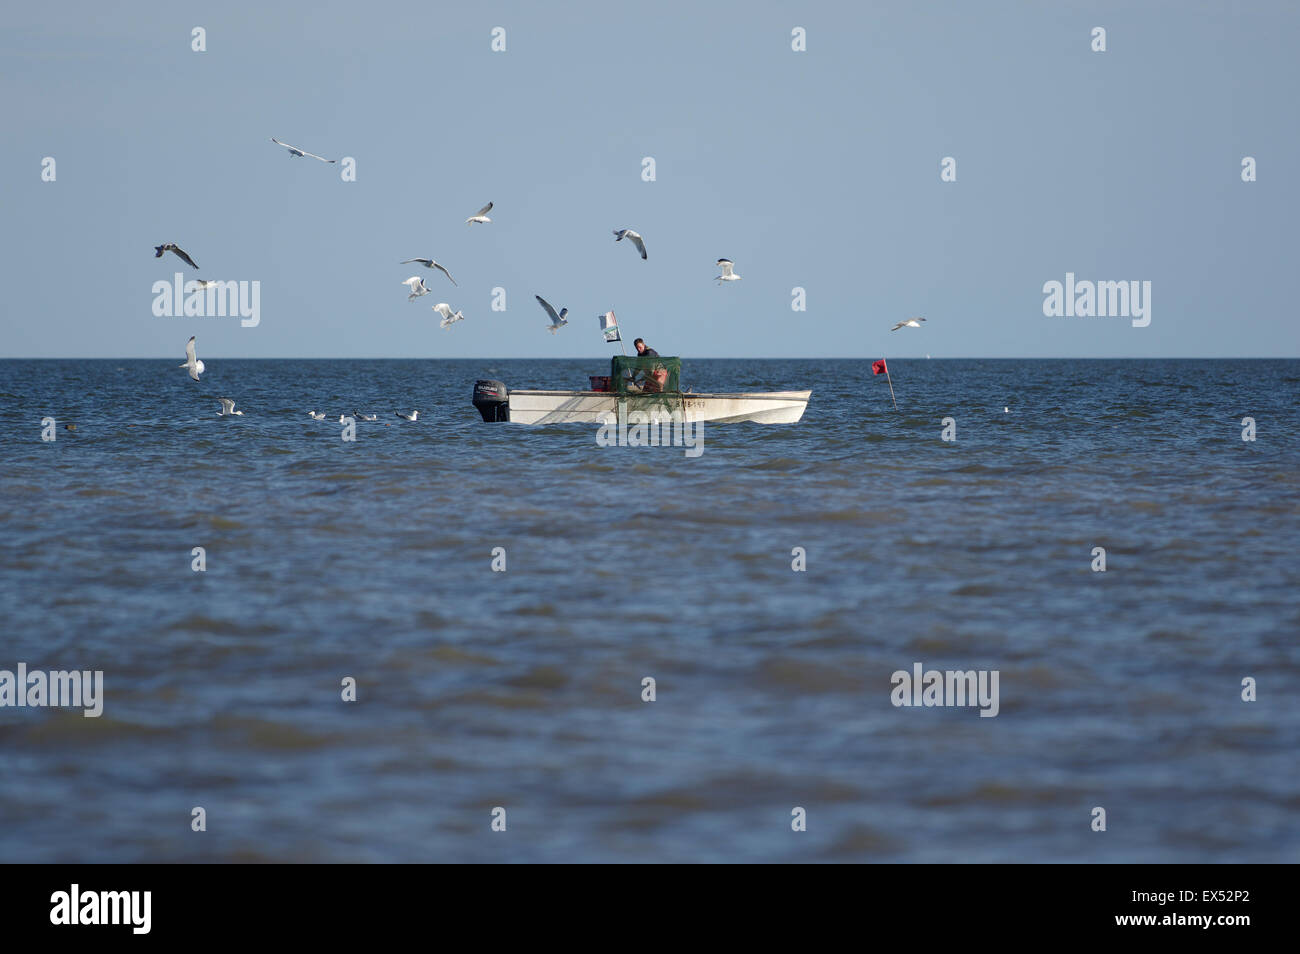 Le pêcheur de la mer Baltique de la baie de Pärnu Estonie 29.06.2015 Valgerand Banque D'Images